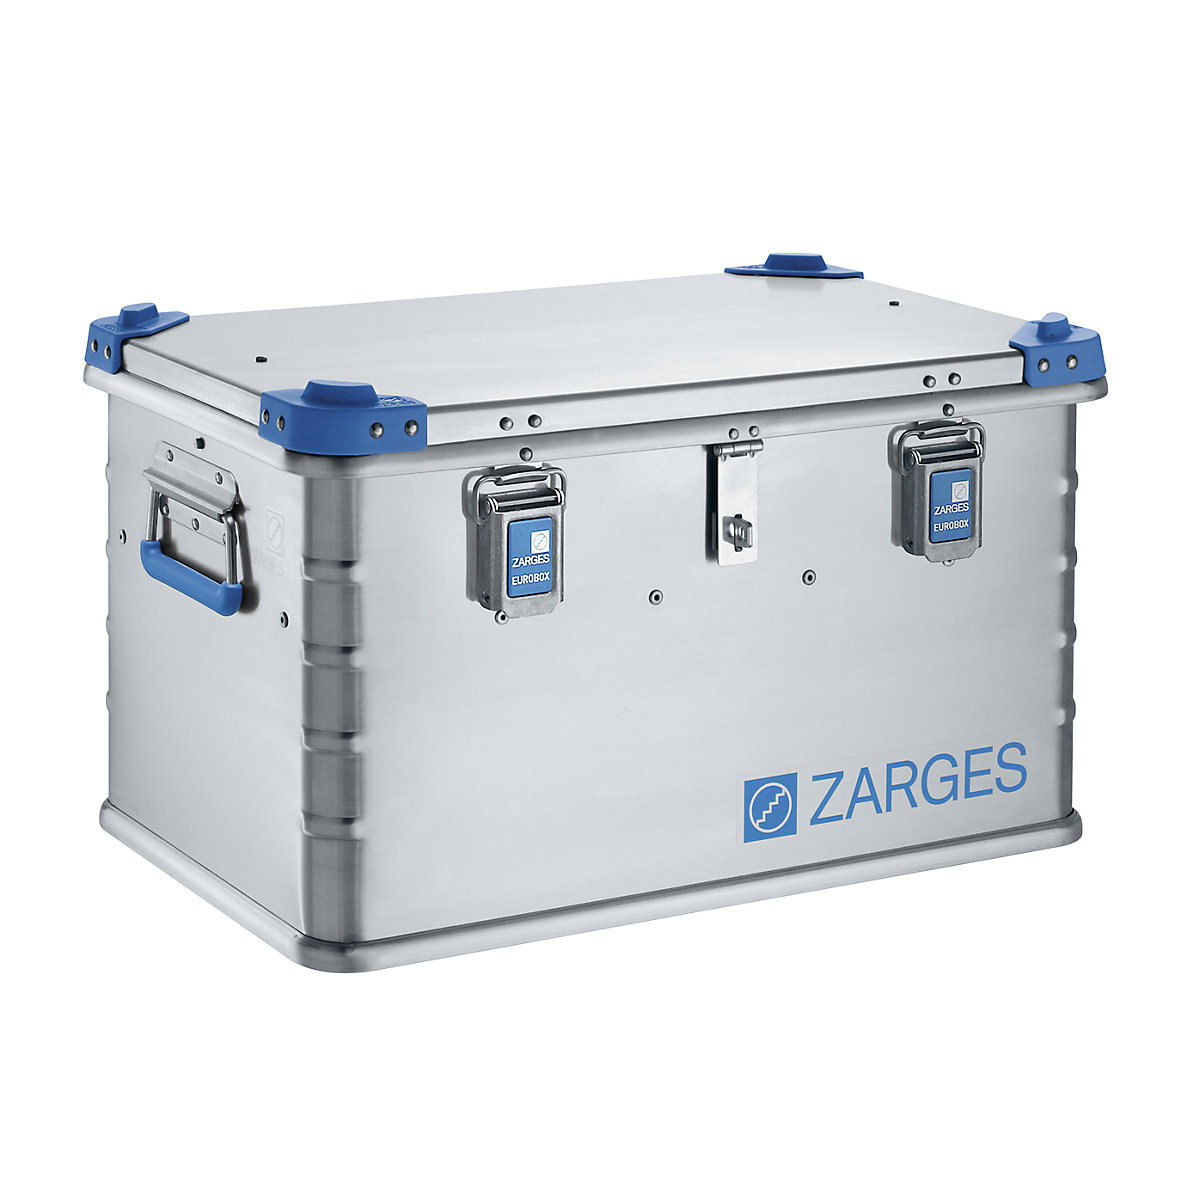 Aluminium Euro tool box – ZARGES